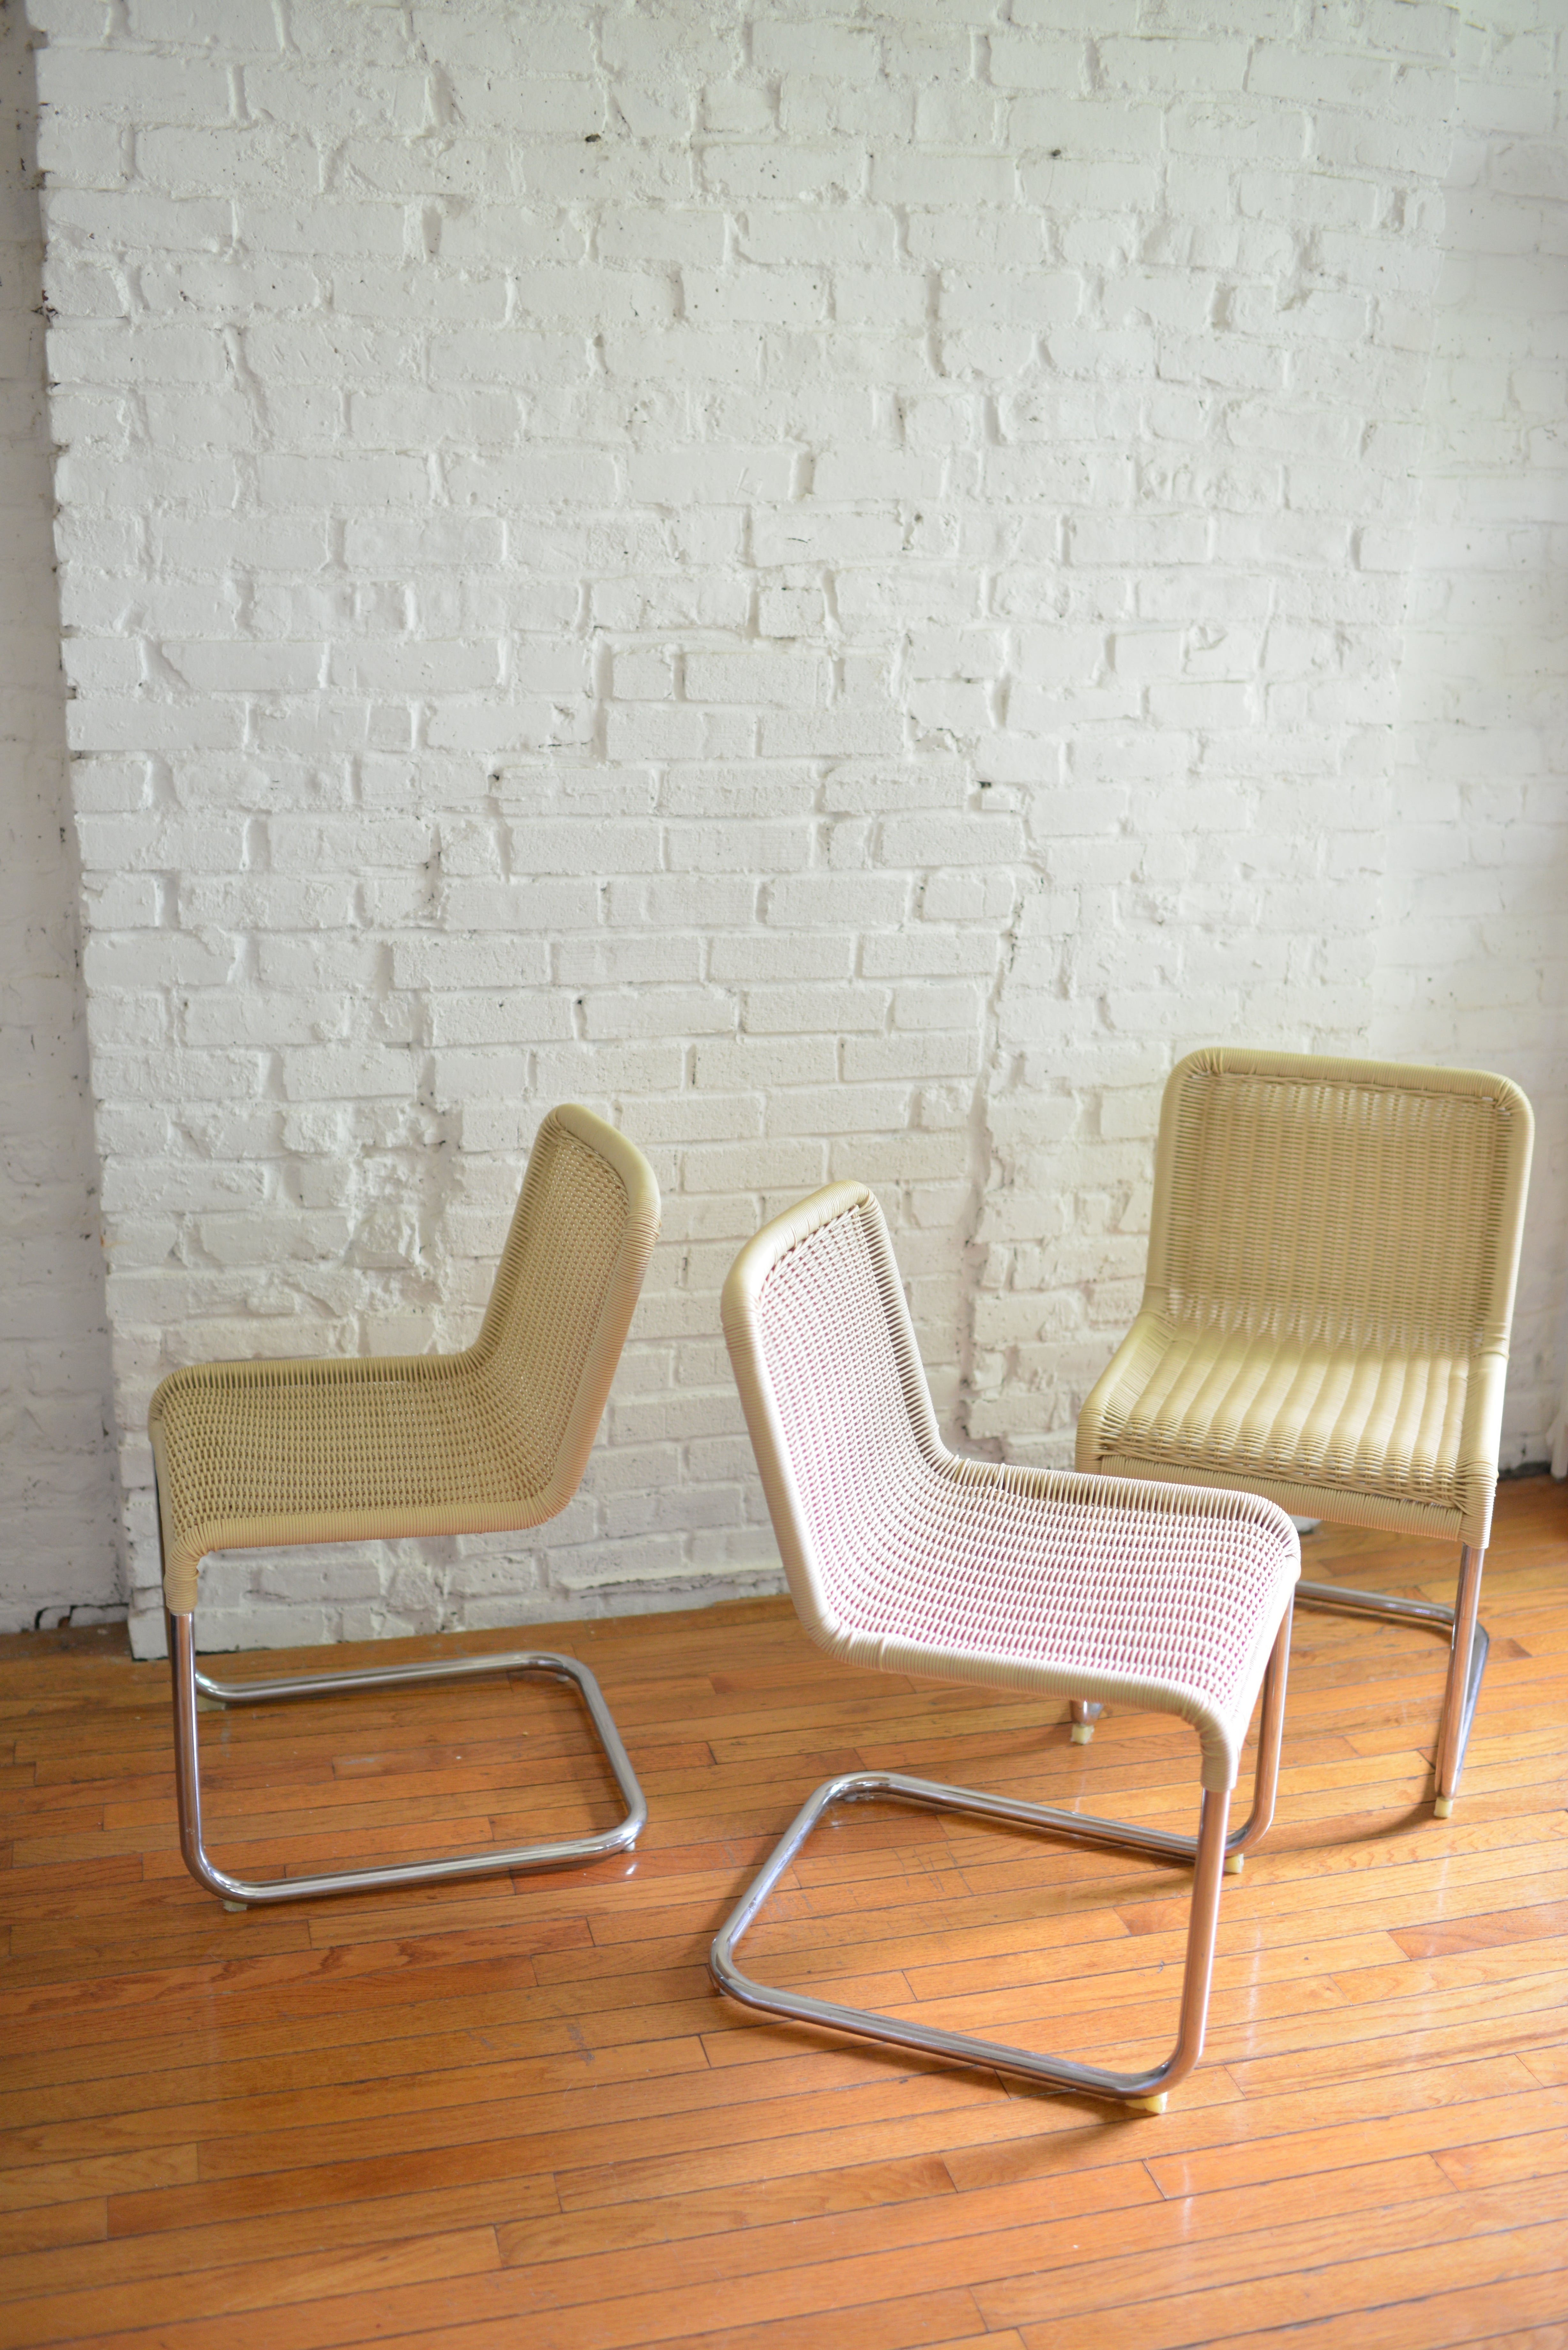 Ensemble de 6 belles chaises luge en rotin synthétique et chrome dans le style de Marcel Breuer. Le rotin crème acrylique et les bases tubulaires chromées constituent ces chaises magnifiques et durables. Toutes les chaises sont en état d'origine